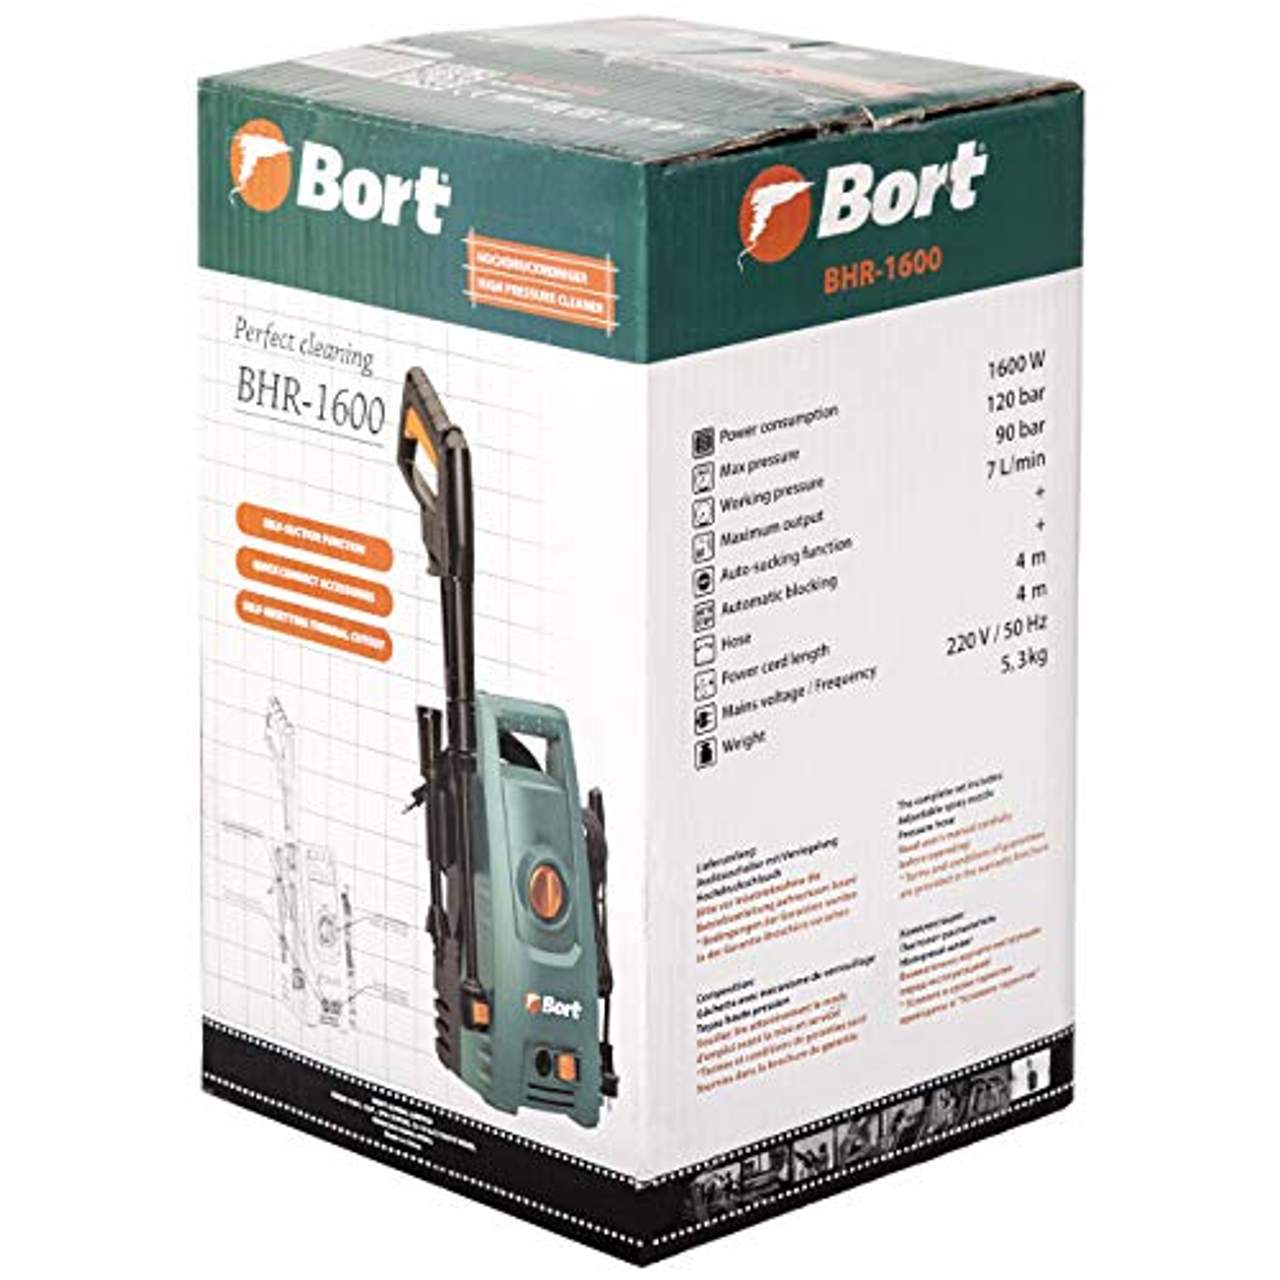 Bort Hochdruckreiniger BHR-1600, 120 bar, 7 L/min, 4m Schlauch, 1600 Watt, Quick Connect System zum schnellen Wechseln der Aufsätze